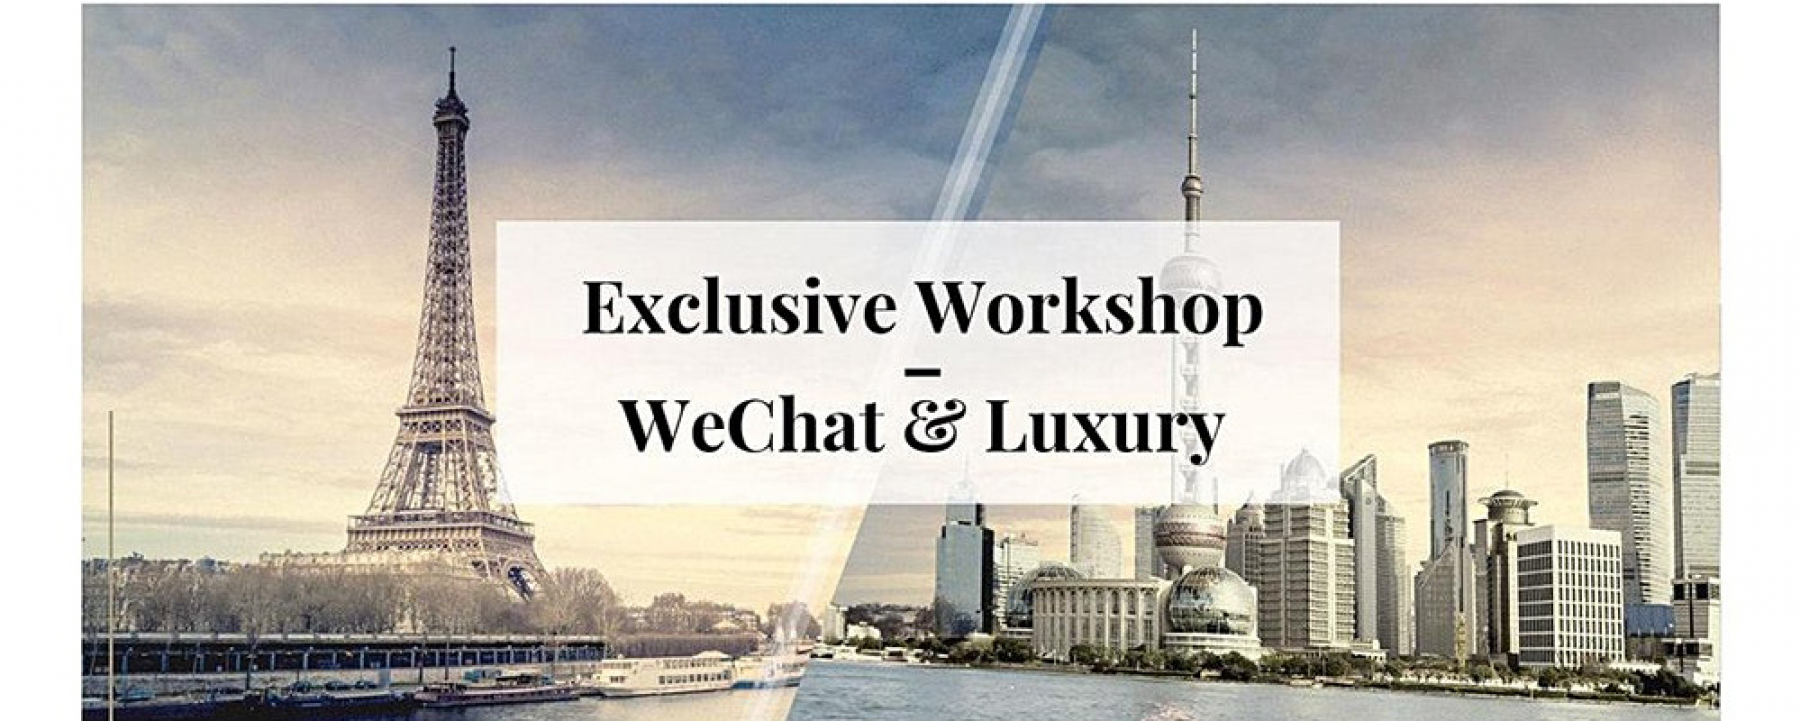 Événement Exclusive Workshop WeChat & Luxury, organisé par The V Factory, le 27 février 2020